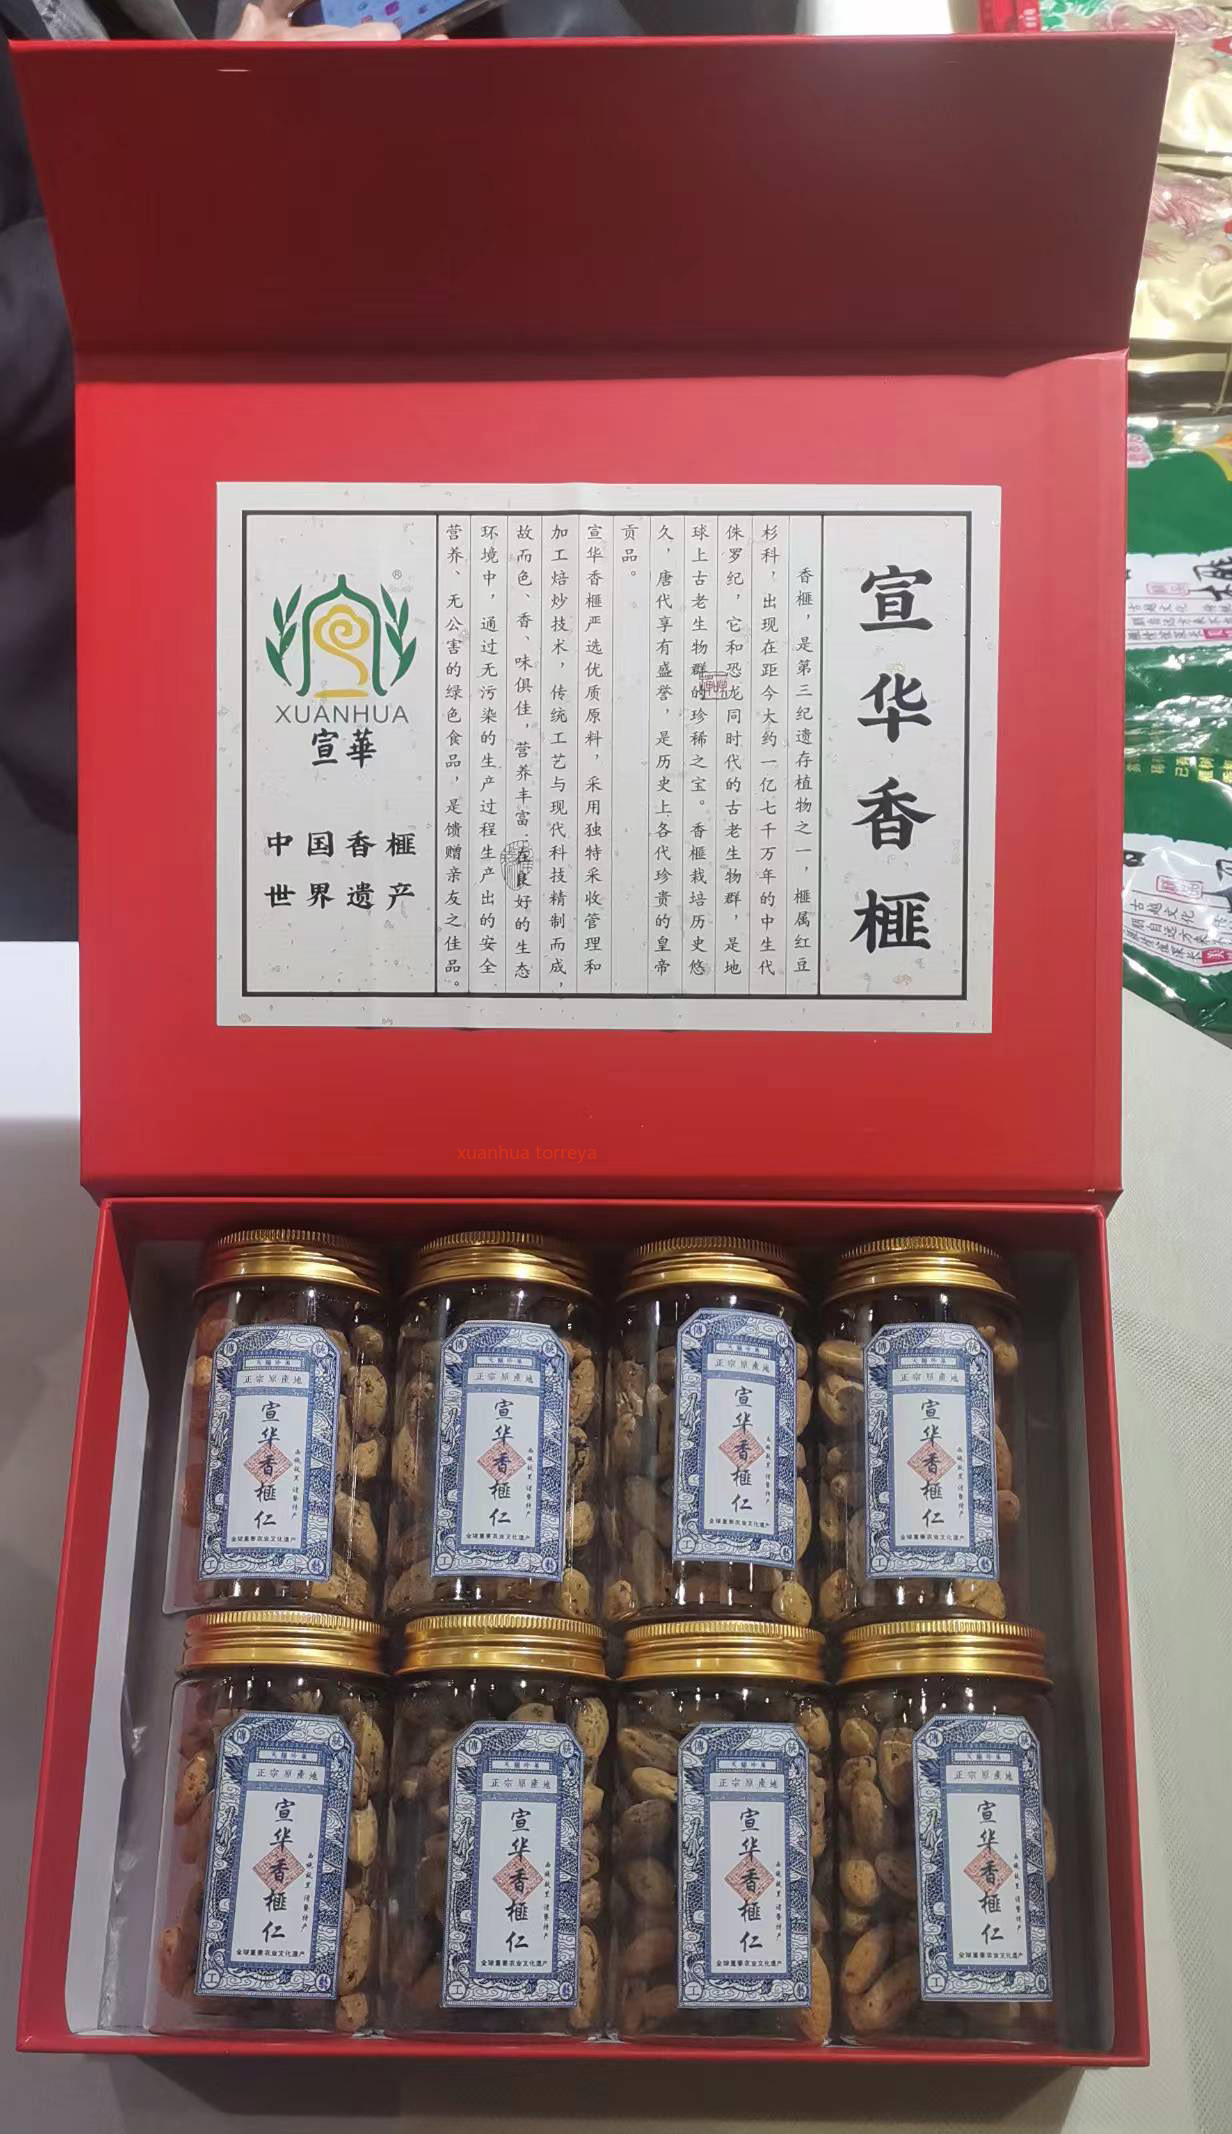 【宣华香榧】产自全球重要农业文化遗产 红礼盒罐装香榧仁图